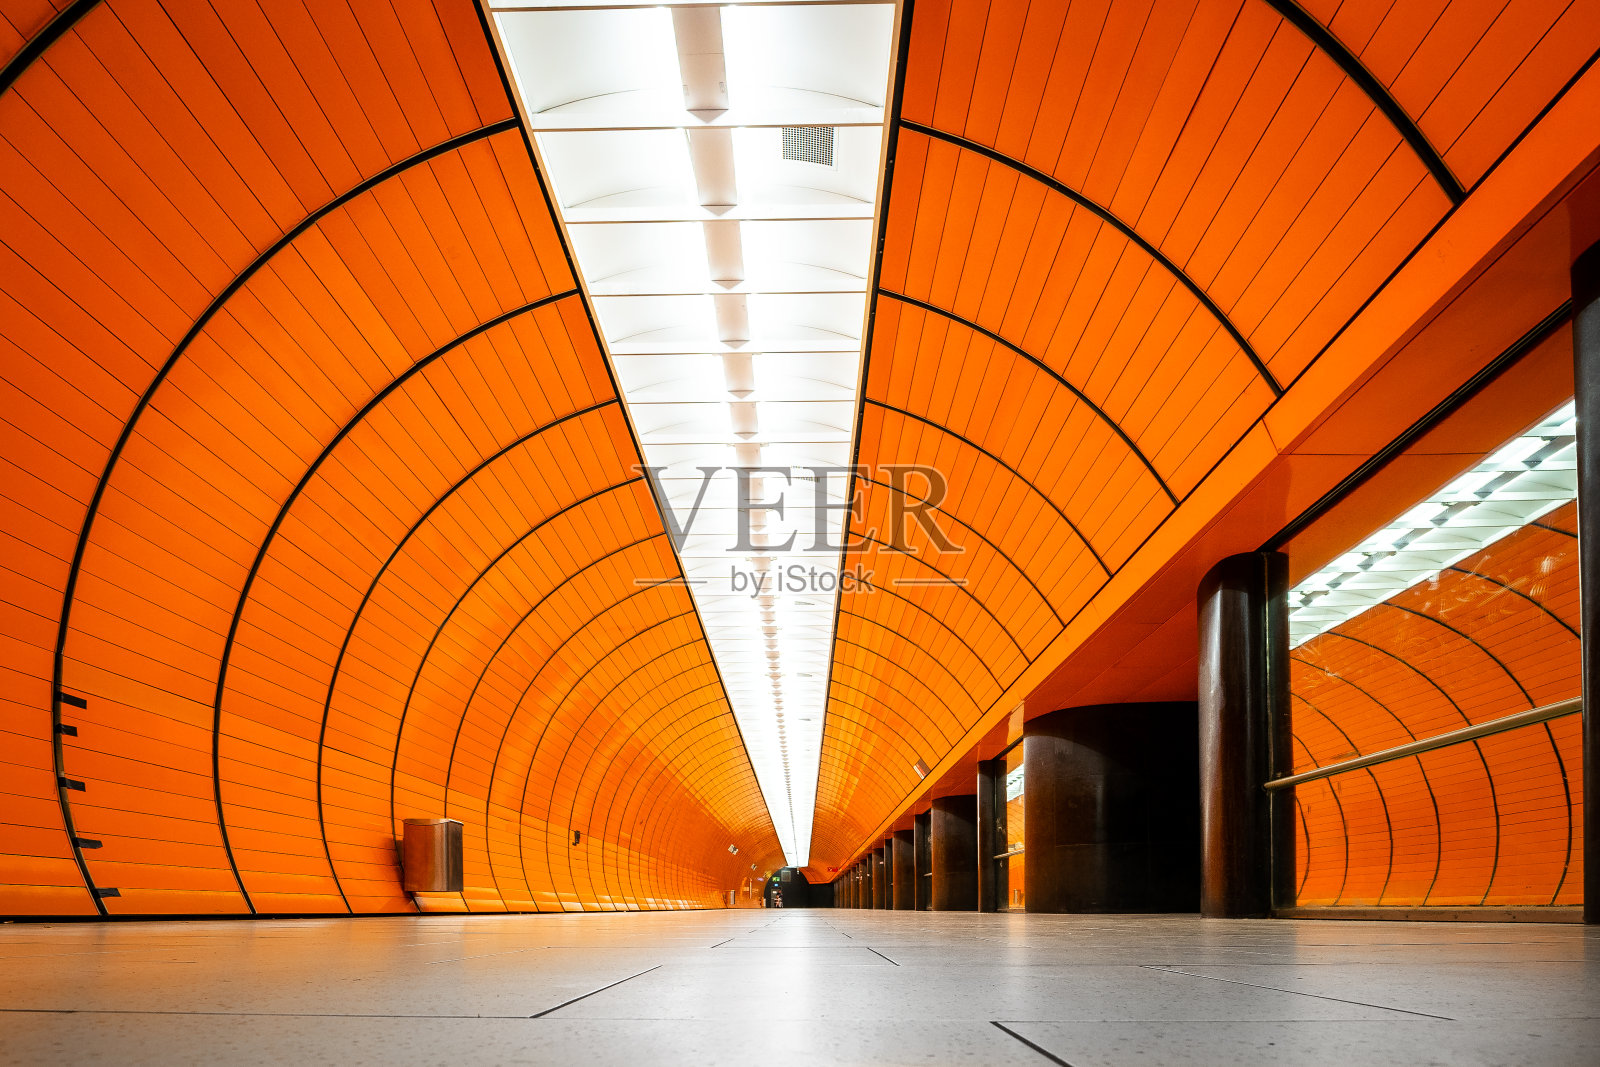 德国慕尼黑地铁站“玛丽安广场”照片摄影图片